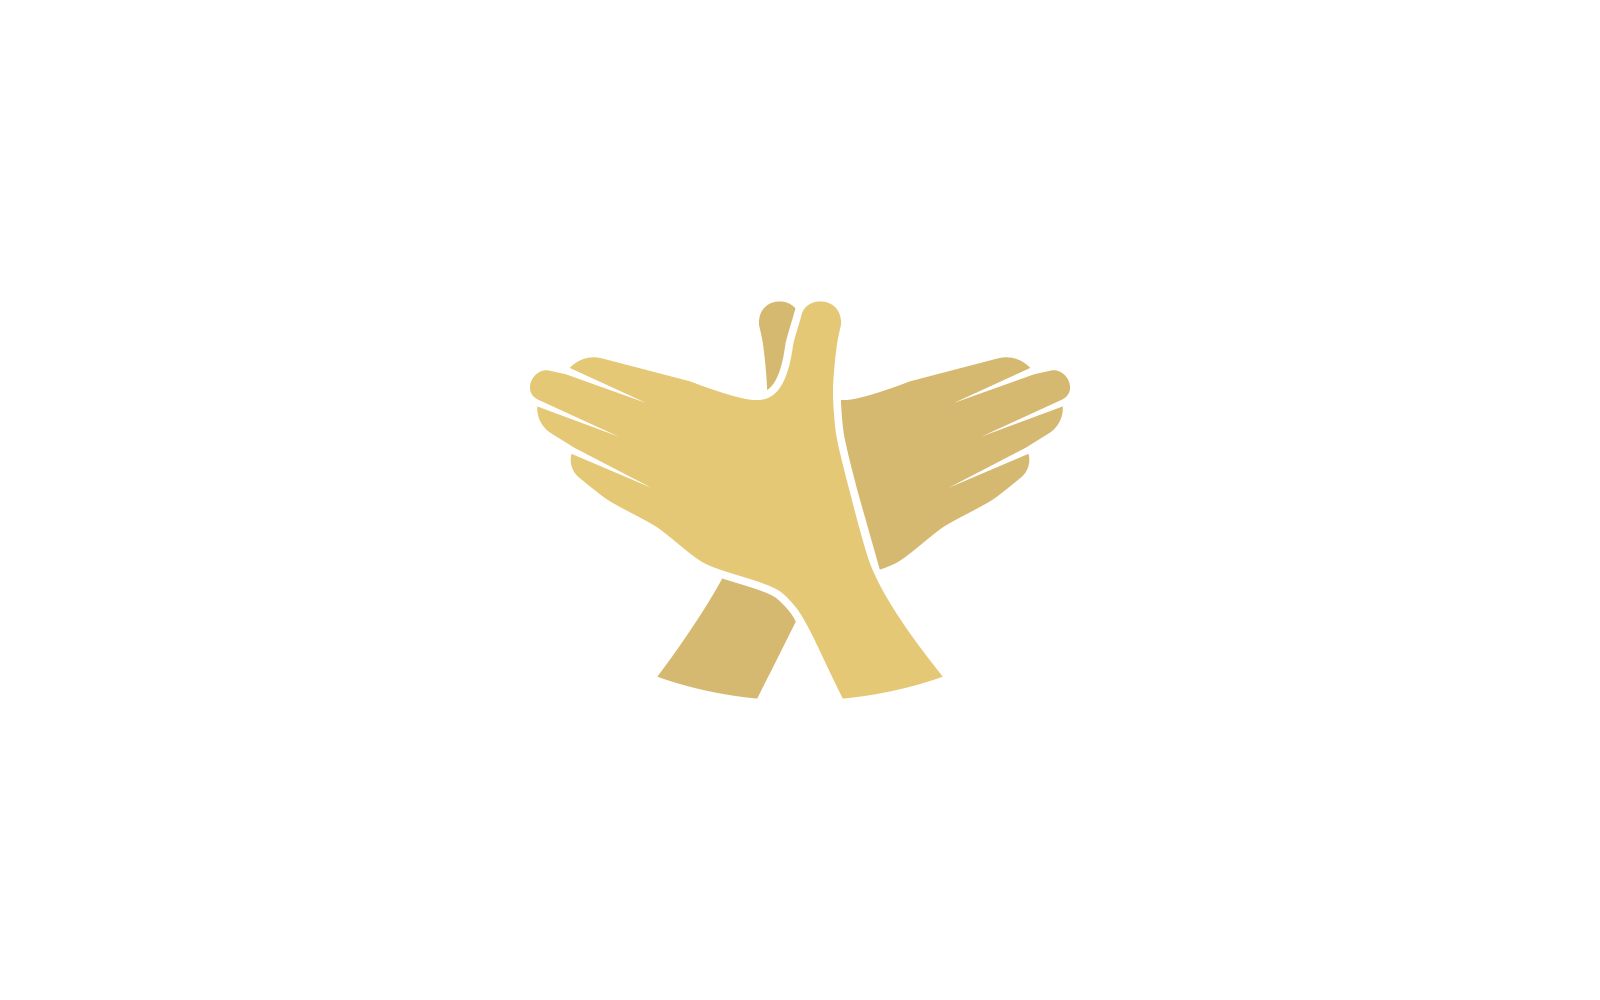 Création de logo d'illustration d'oiseau de geste de main